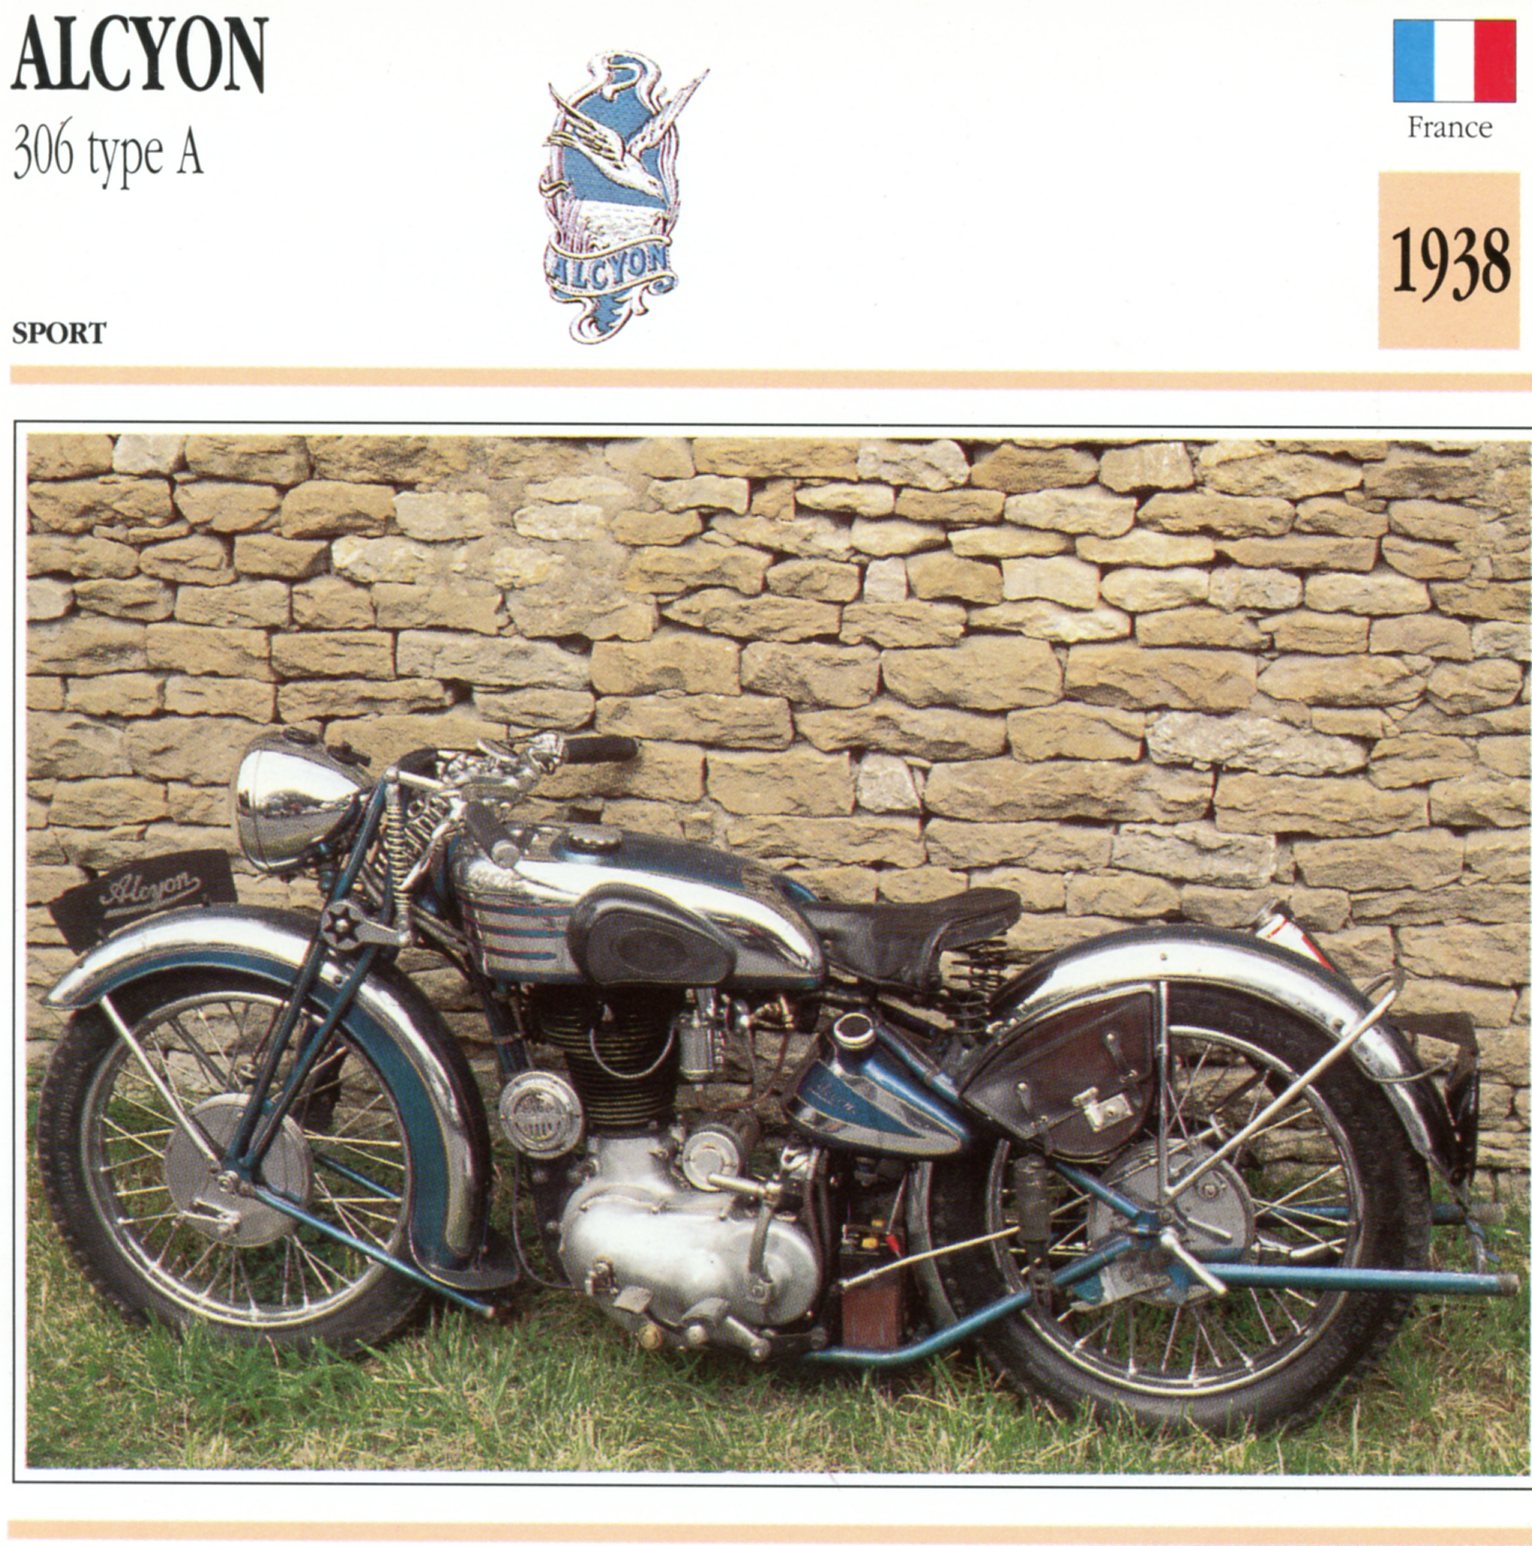 ALCYON 306 TYPE A 1938 - CARTE CARD FICHE MOTO CARACTERISTIQUES